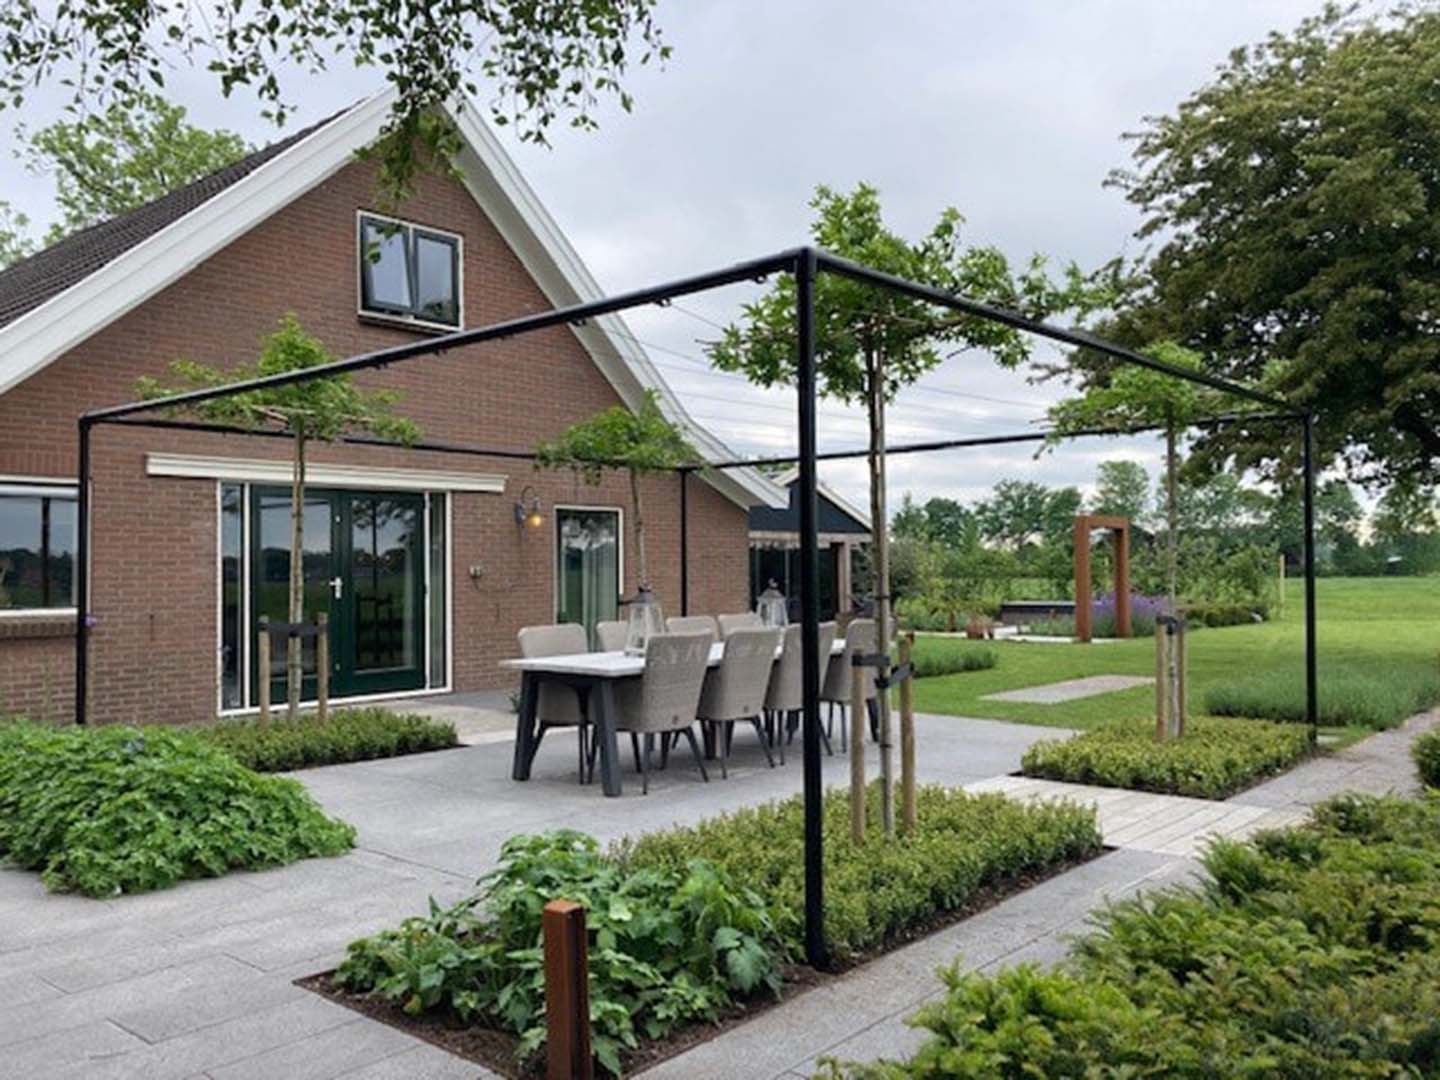 Dakconstructie voor dakbomen in tuin - Brunne Drenthe